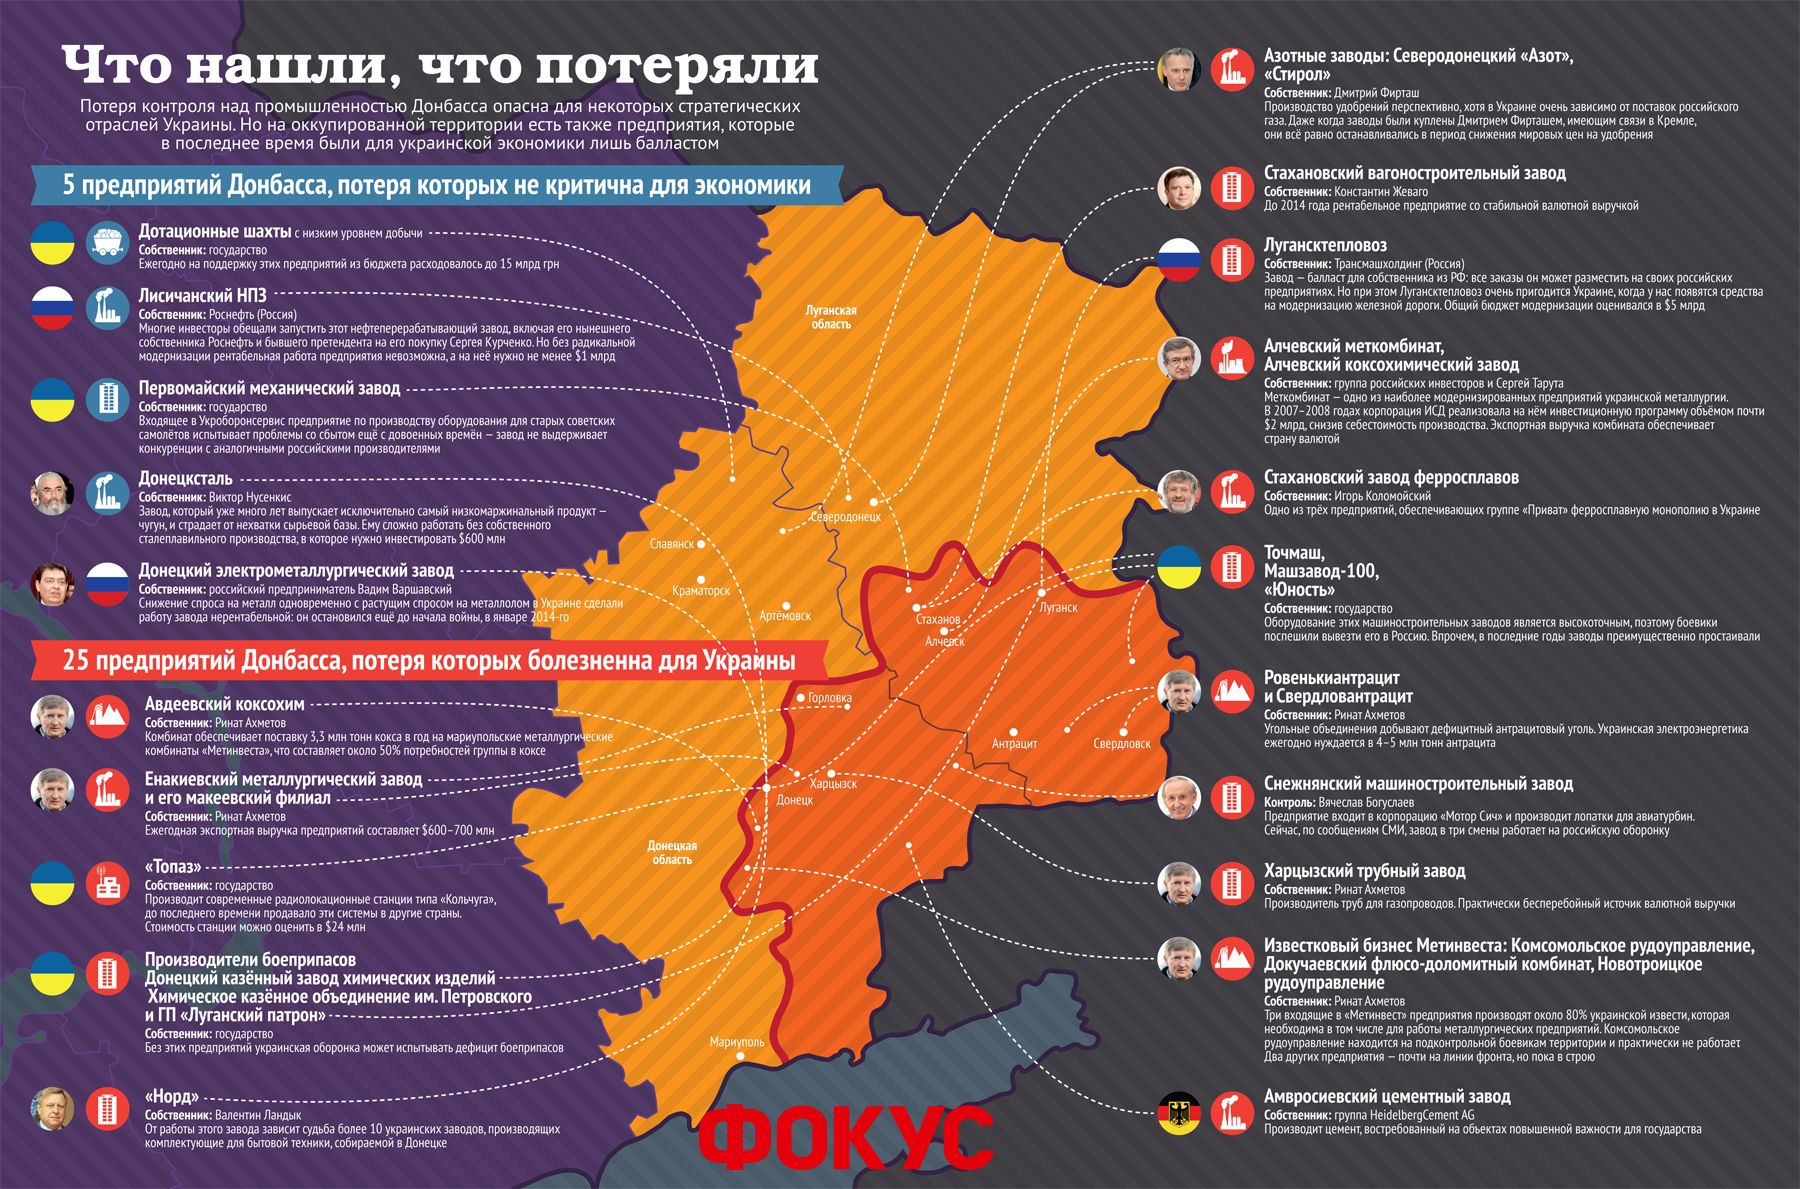 Втрачені підприємства на Донбасі (інфографіка). Але є також підприємства, які останнім часом були баластом для української економіки.